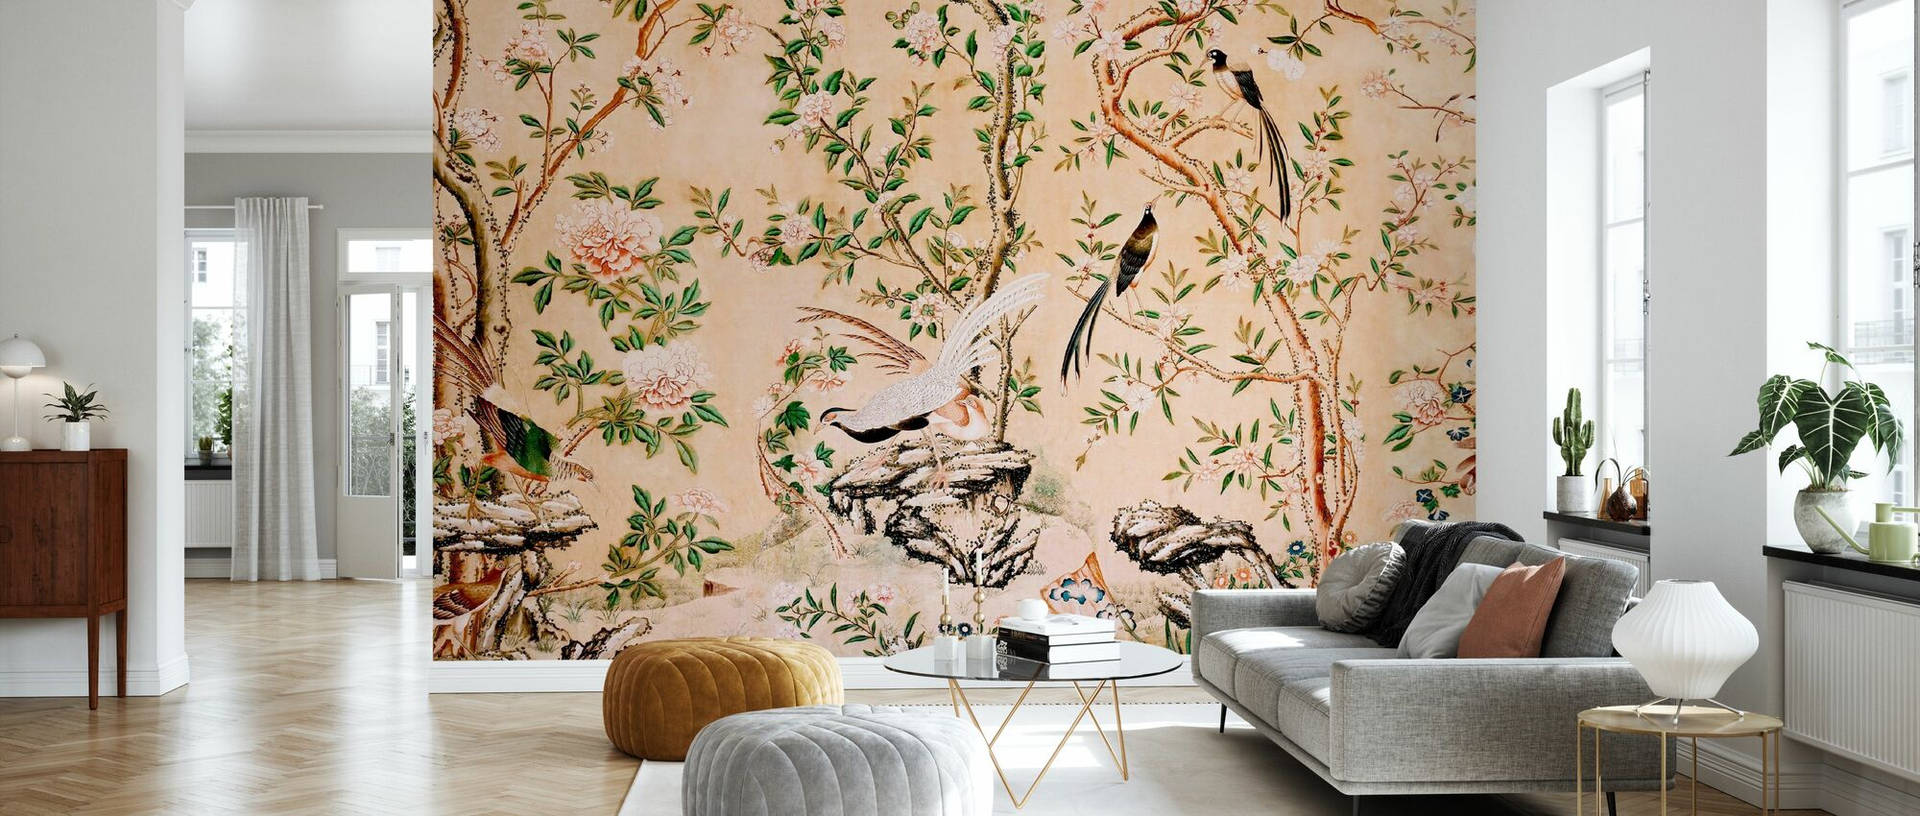 Chinoiserie Living Room Wallpaper